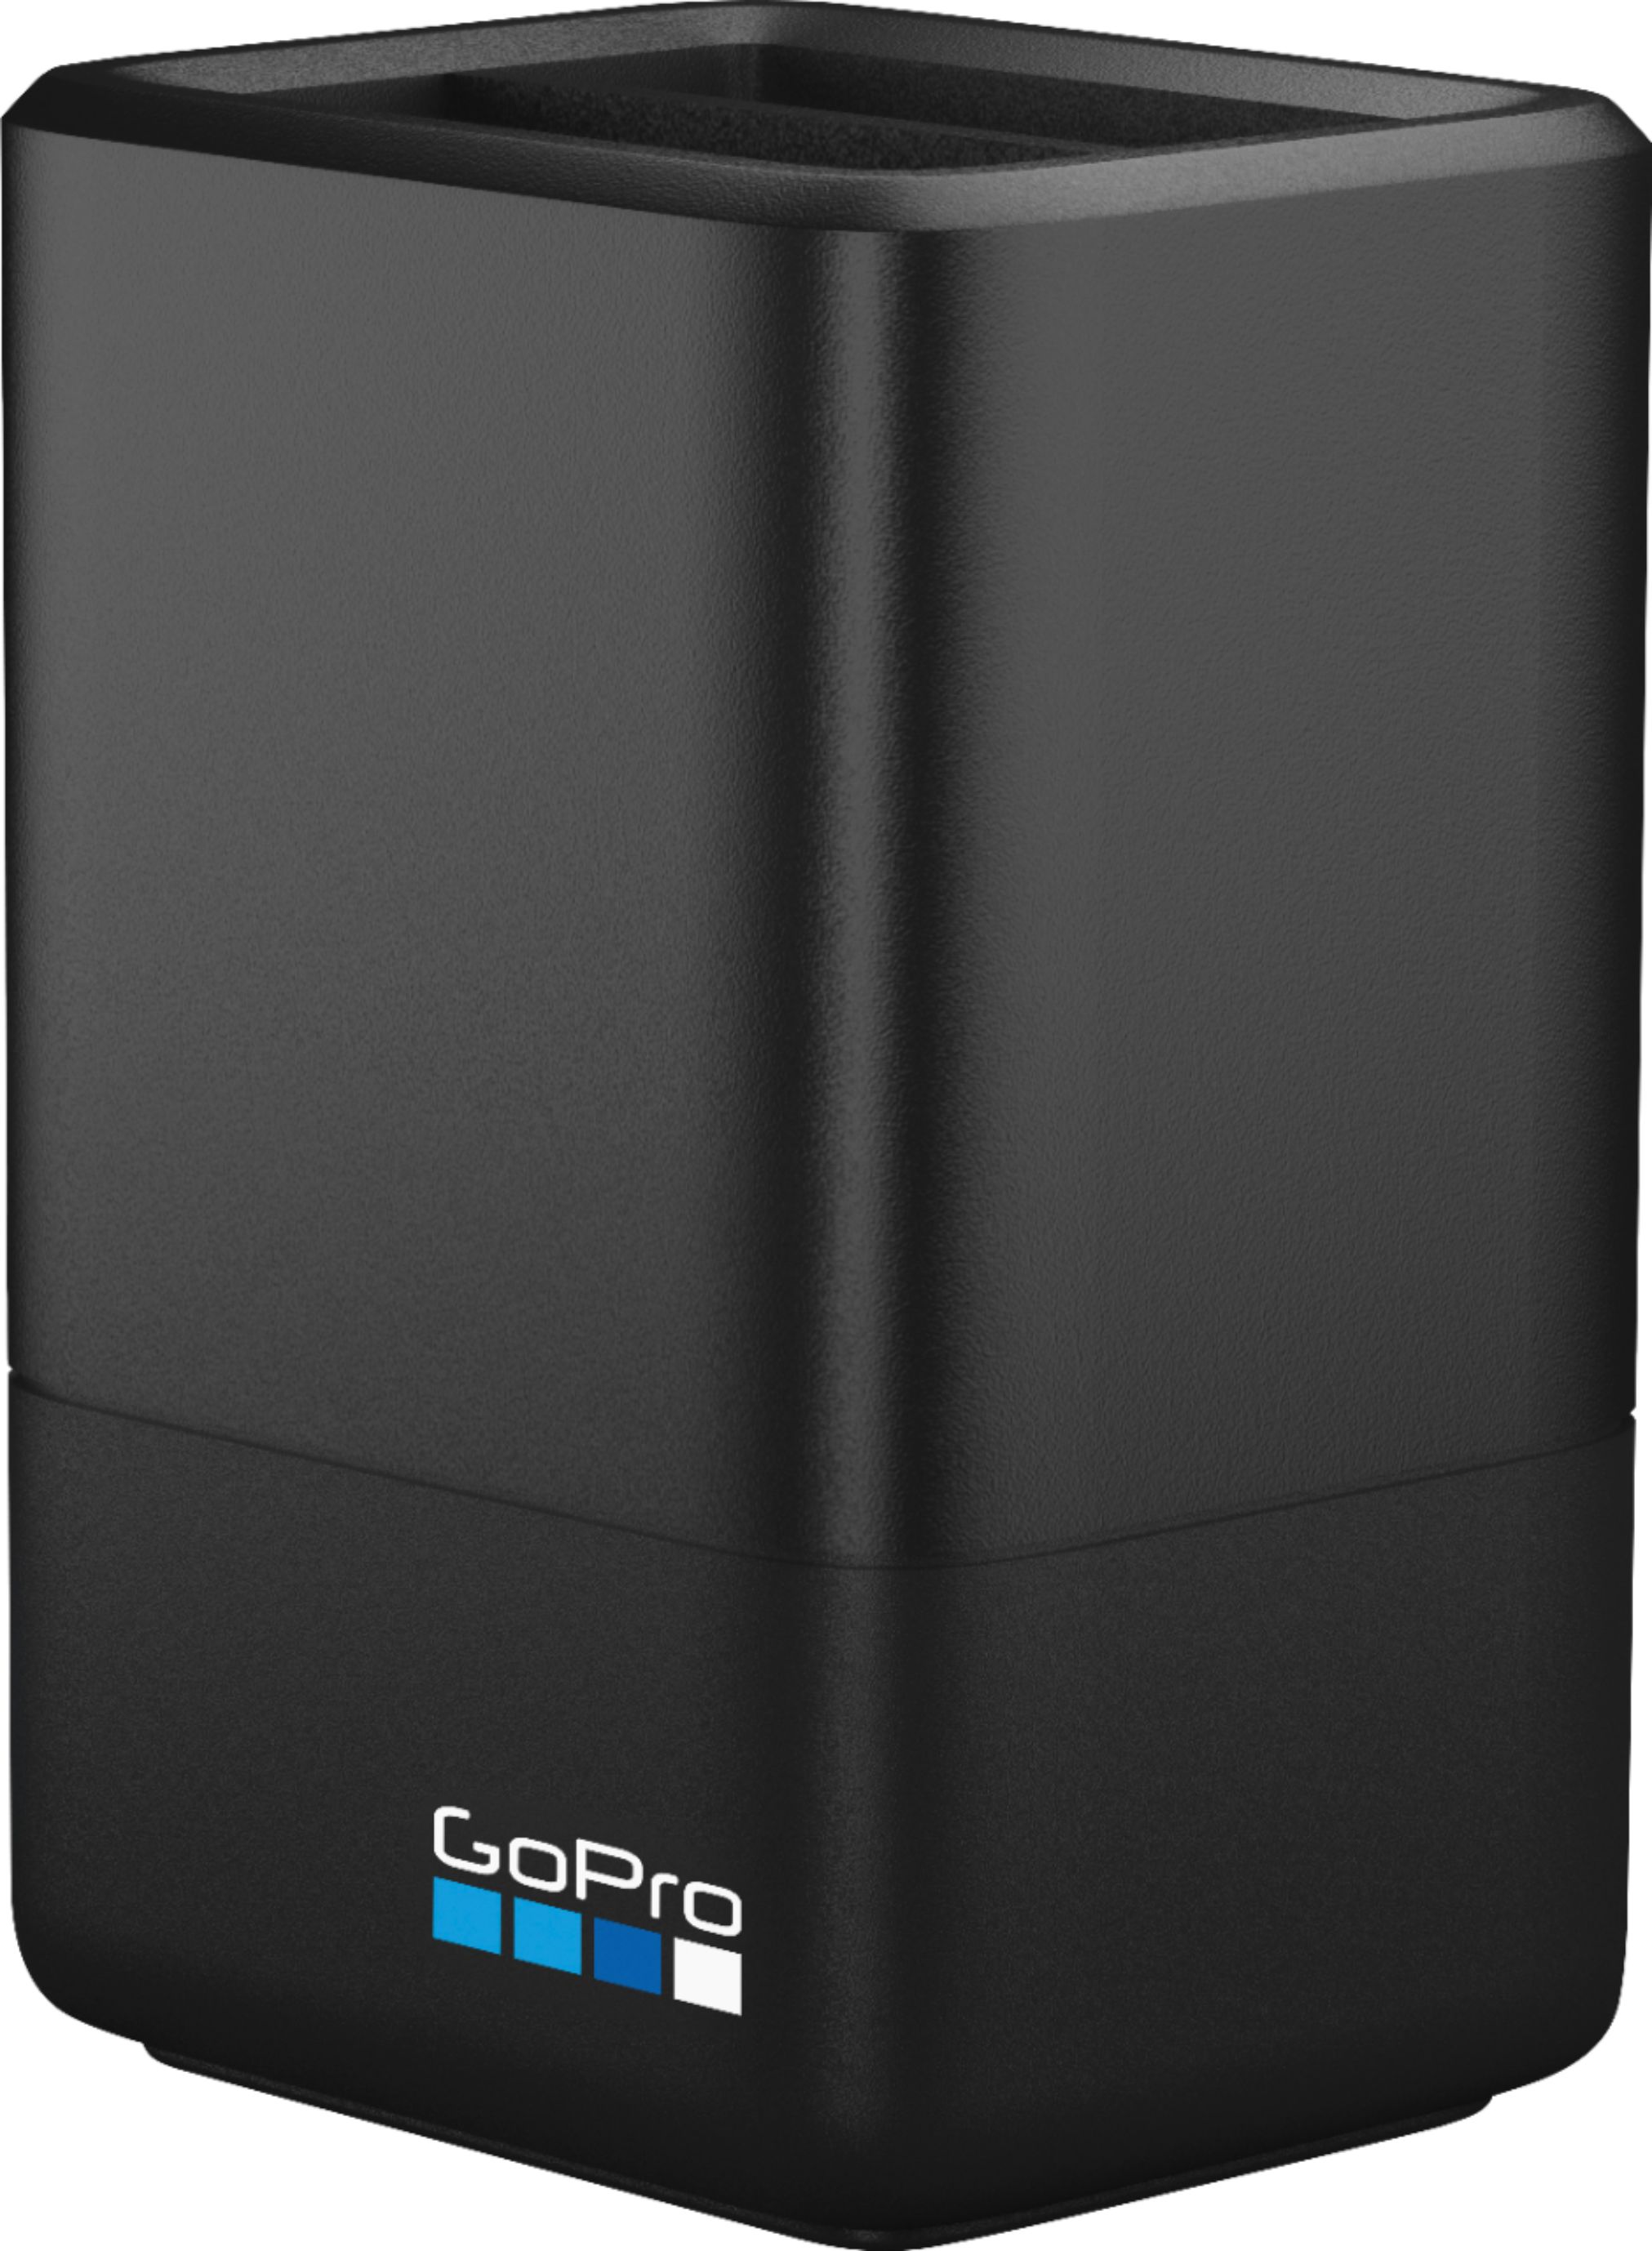 HERO8 Black - Chargeur de batterie double et batterie